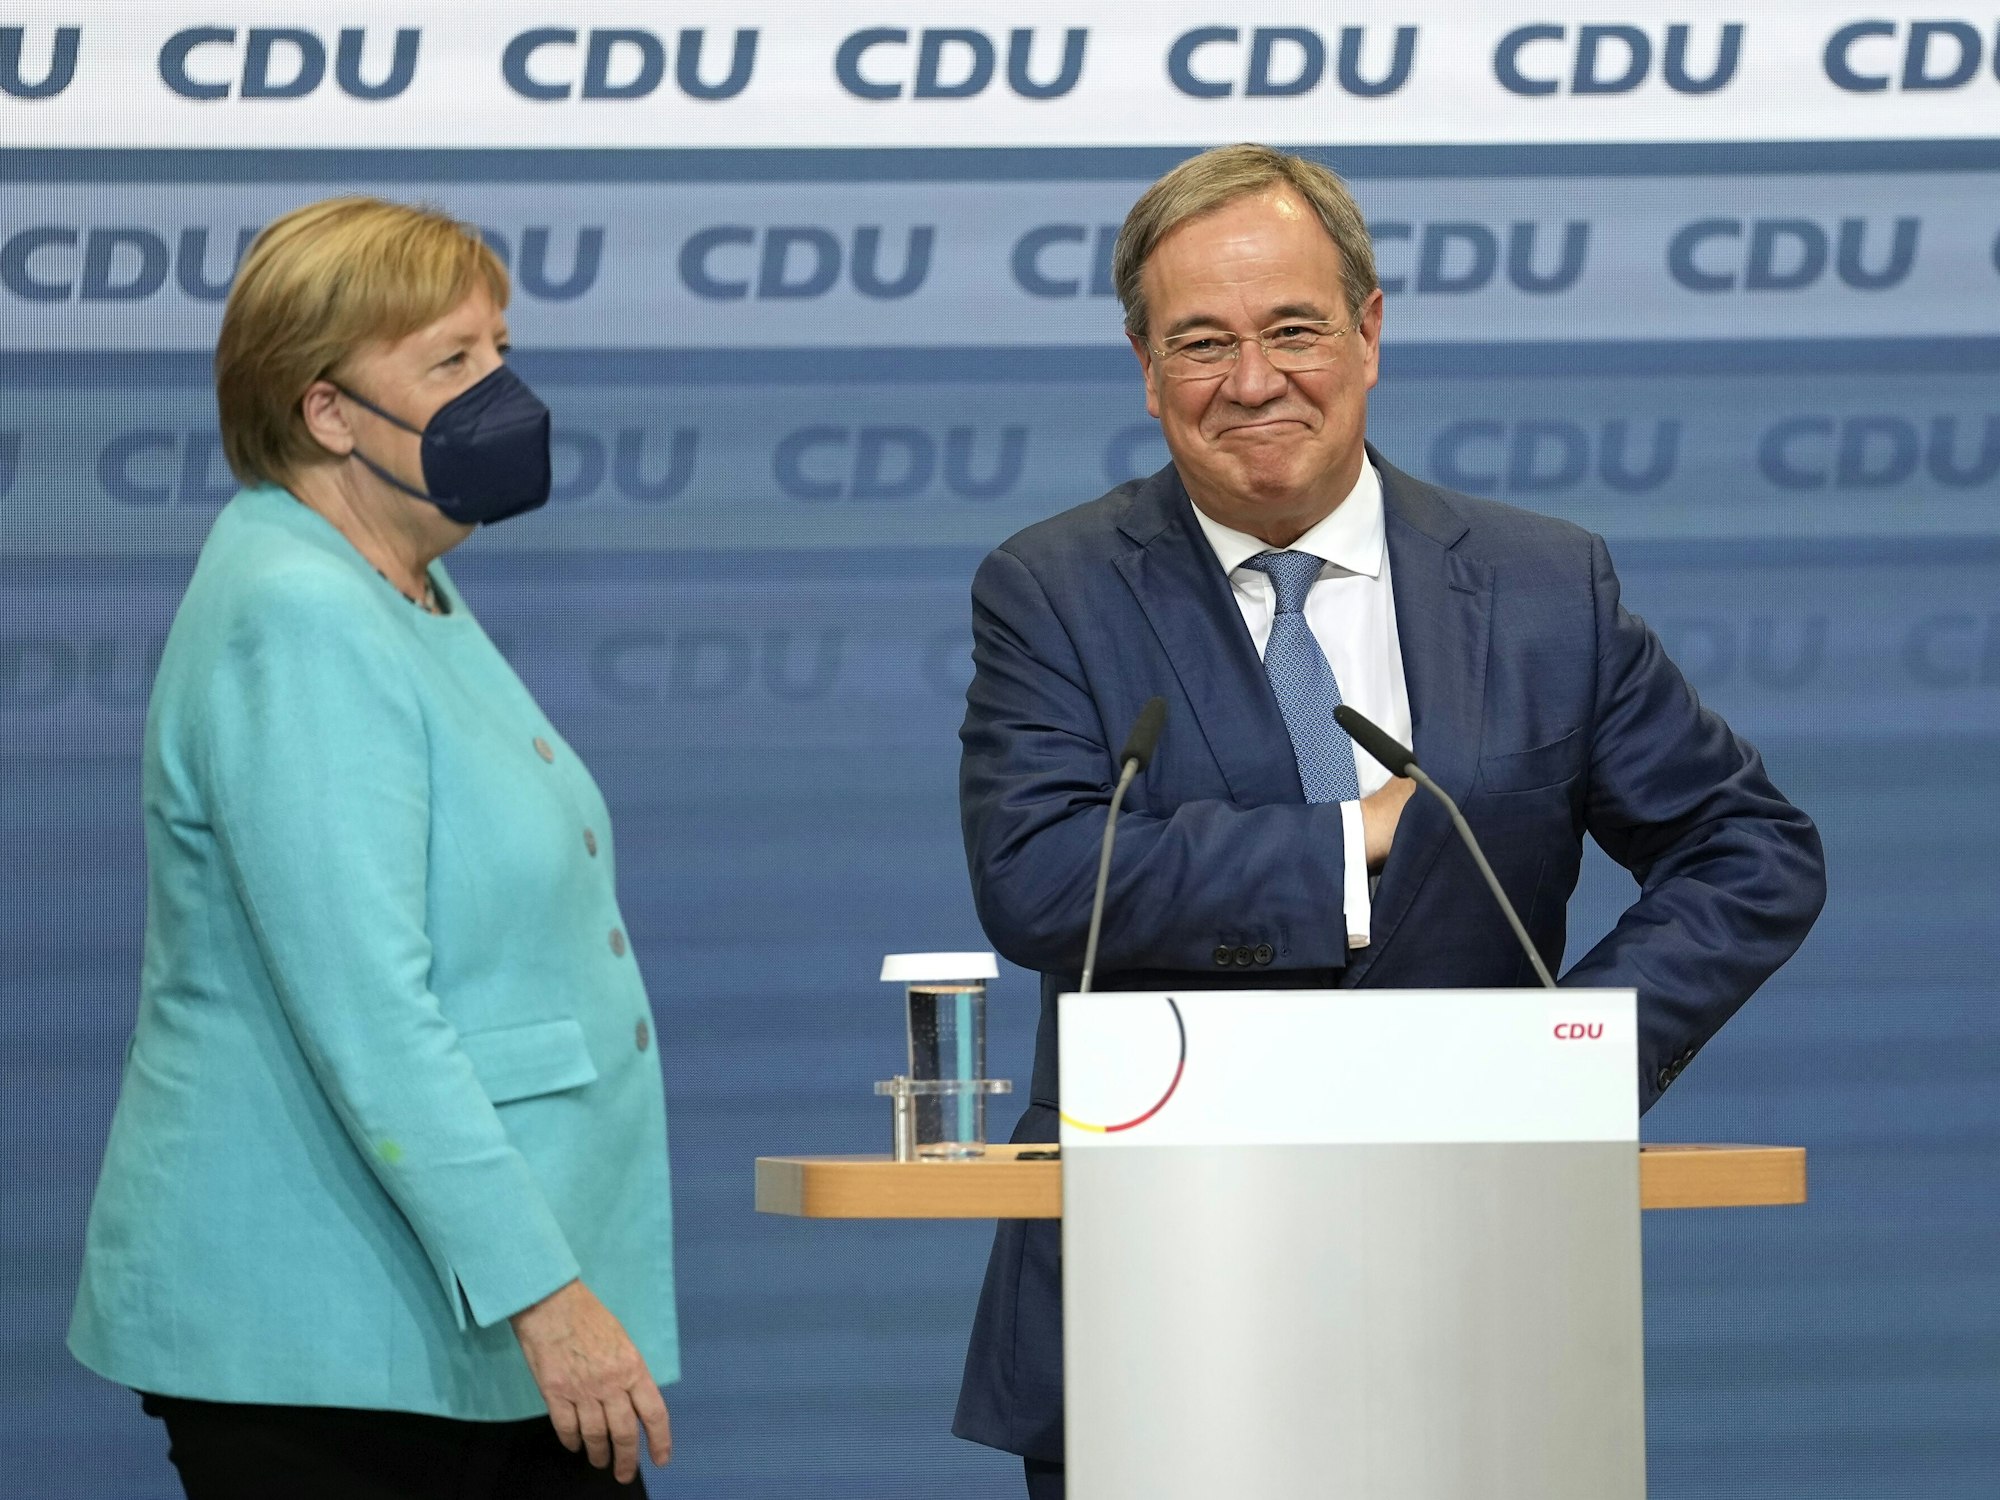 Bundeskanzlerin Angela Merkel steht gemeinsam mit Armin Laschet am Abend der Bundestagswahl (26.09.2021) im Konrad-Adenauer-Haus auf der Bühne.